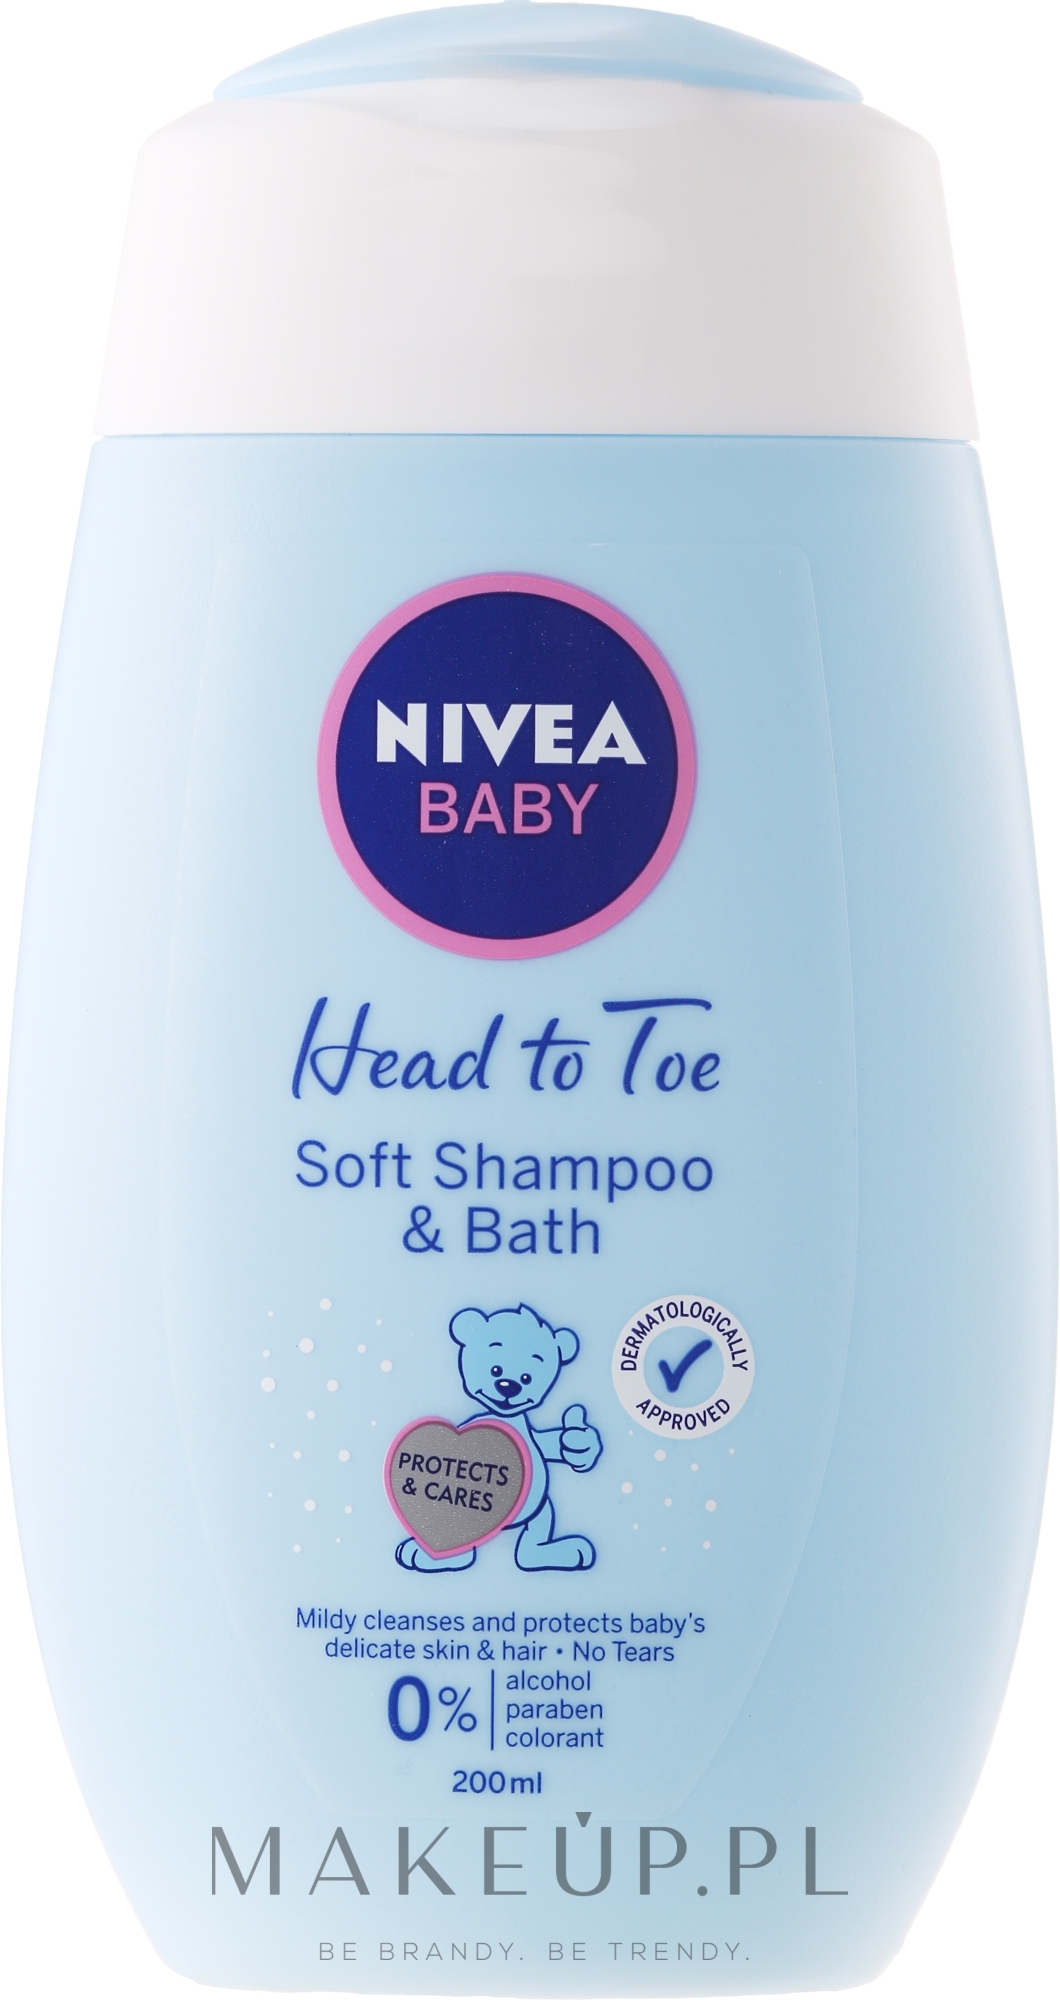 nivea baby lagodny szampon 2w1 blogspot